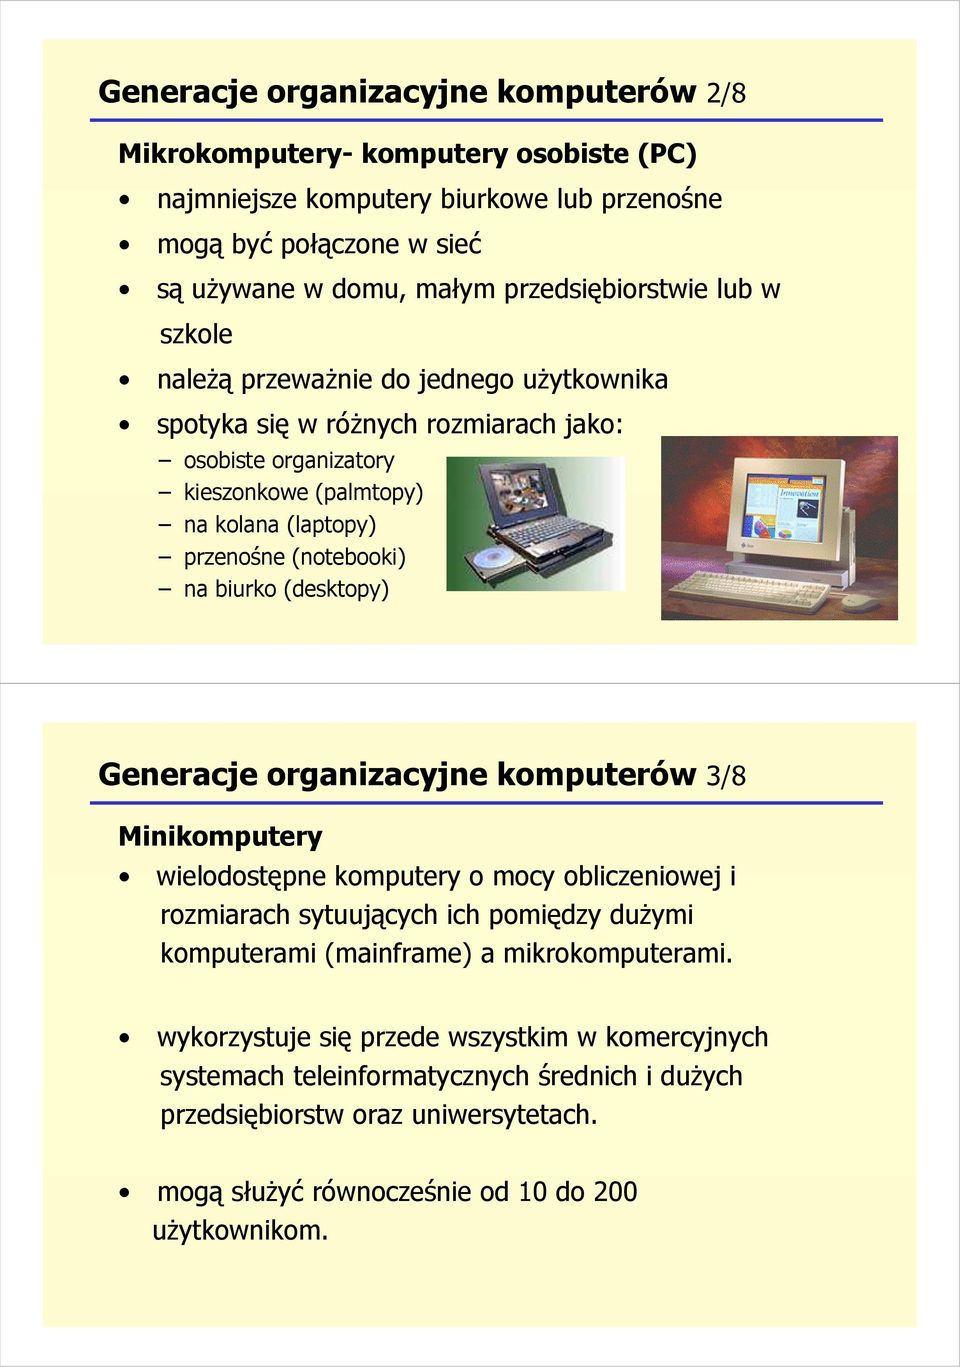 (notebooki) na biurko (desktopy) Generacje organizacyjne komputerów 3/8 Minikomputery wielodostępne komputery o mocy obliczeniowej i rozmiarach sytuujących ich pomiędzy duŝymi komputerami